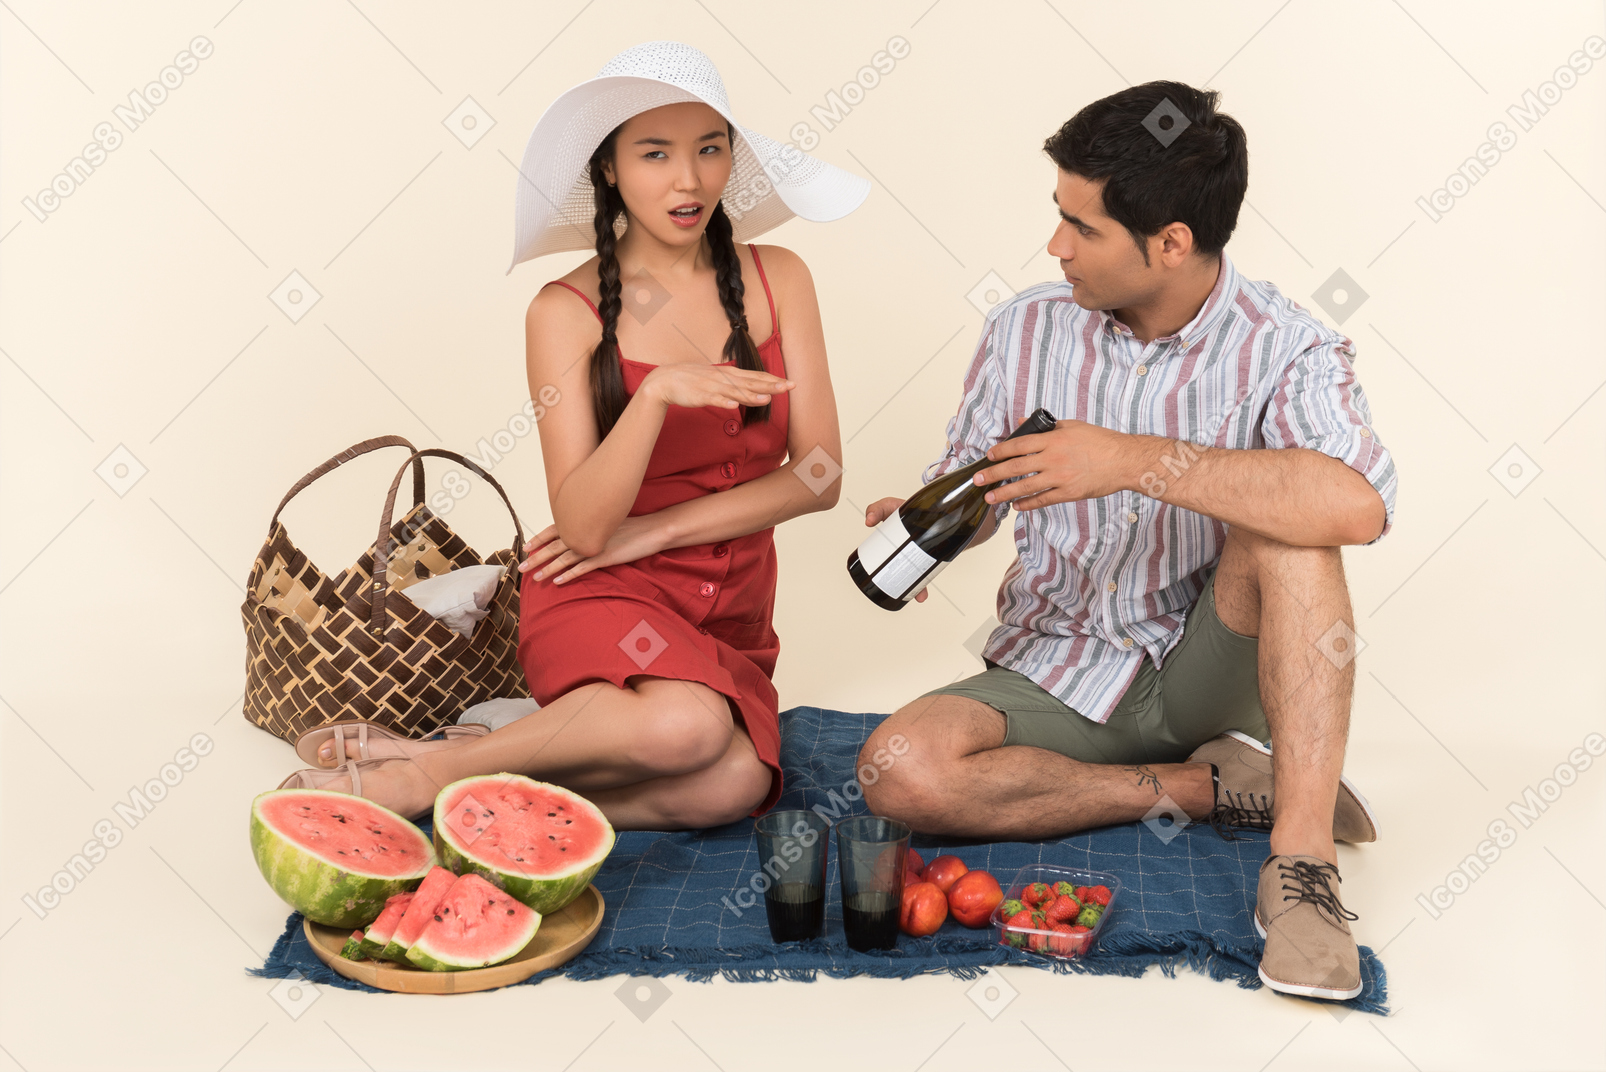 Jeune mec montrant une bouteille de vin sur un pique-nique à une femme qui semble outré